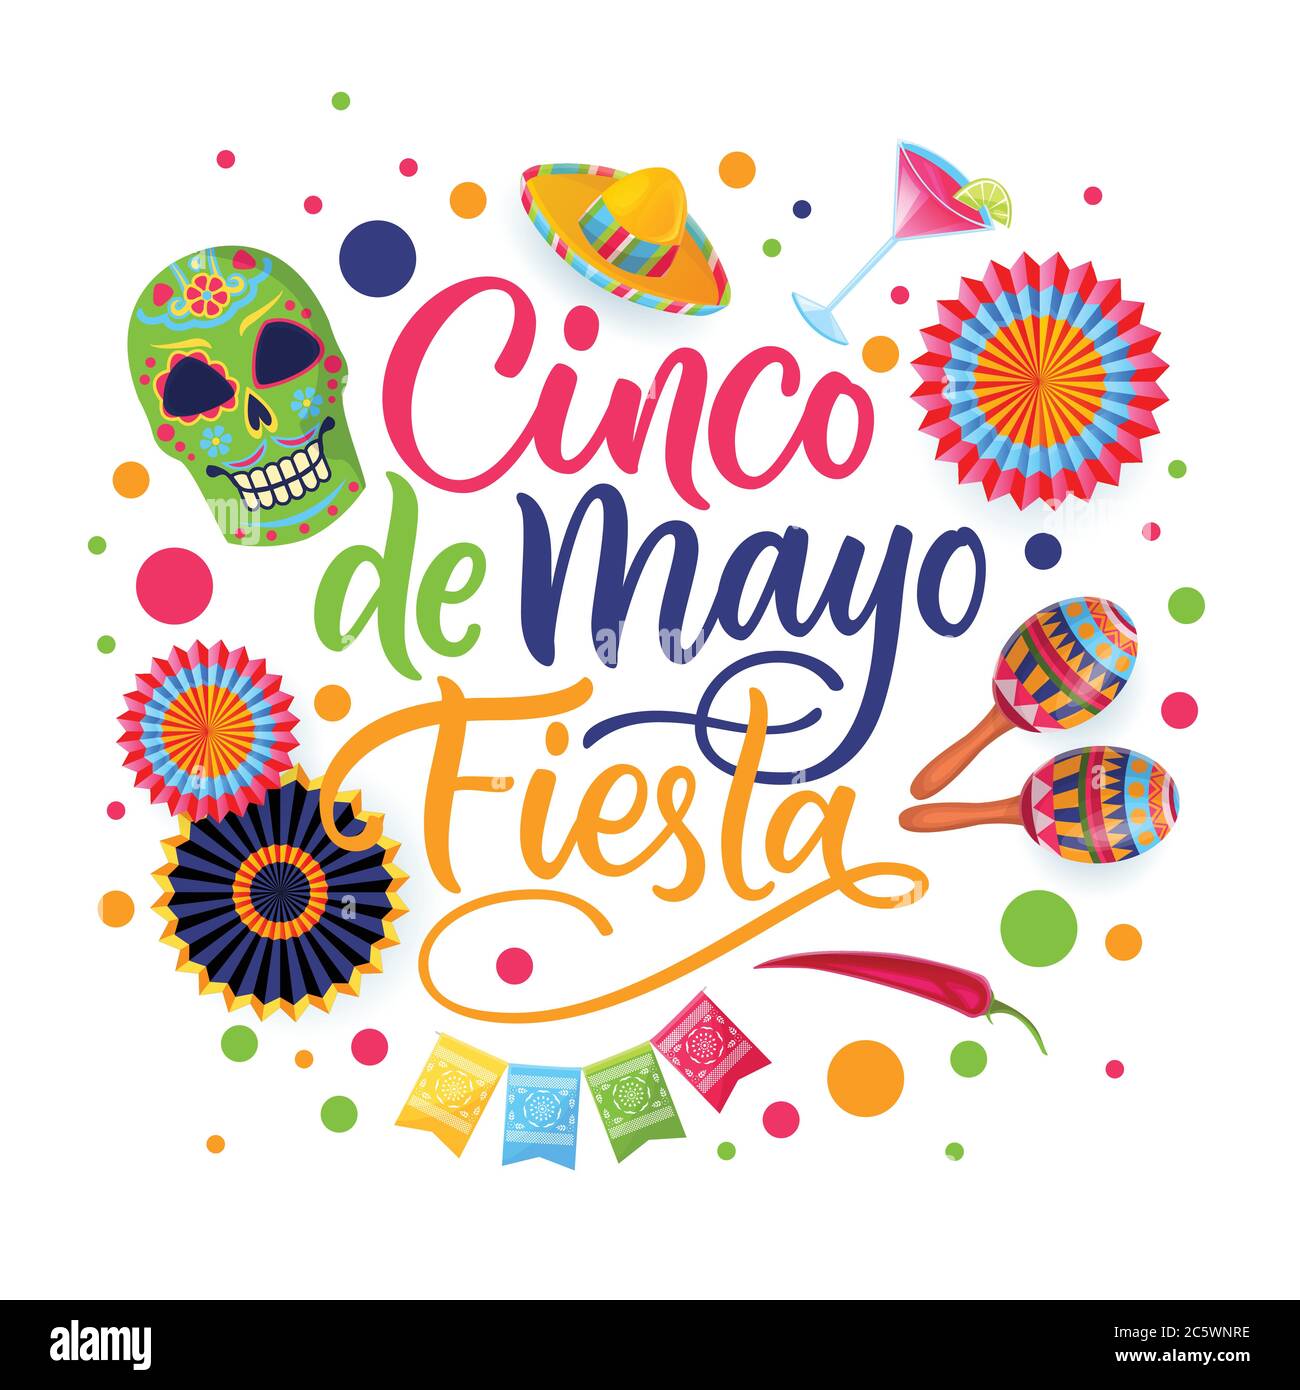 Lettres de calligraphie dessinées à la main et symboles nationaux mexicains Cinco de Mayo Fiesta, isolés sur fond blanc. Carte cadeau de bienvenue, bannière ou affiche Illustration de Vecteur